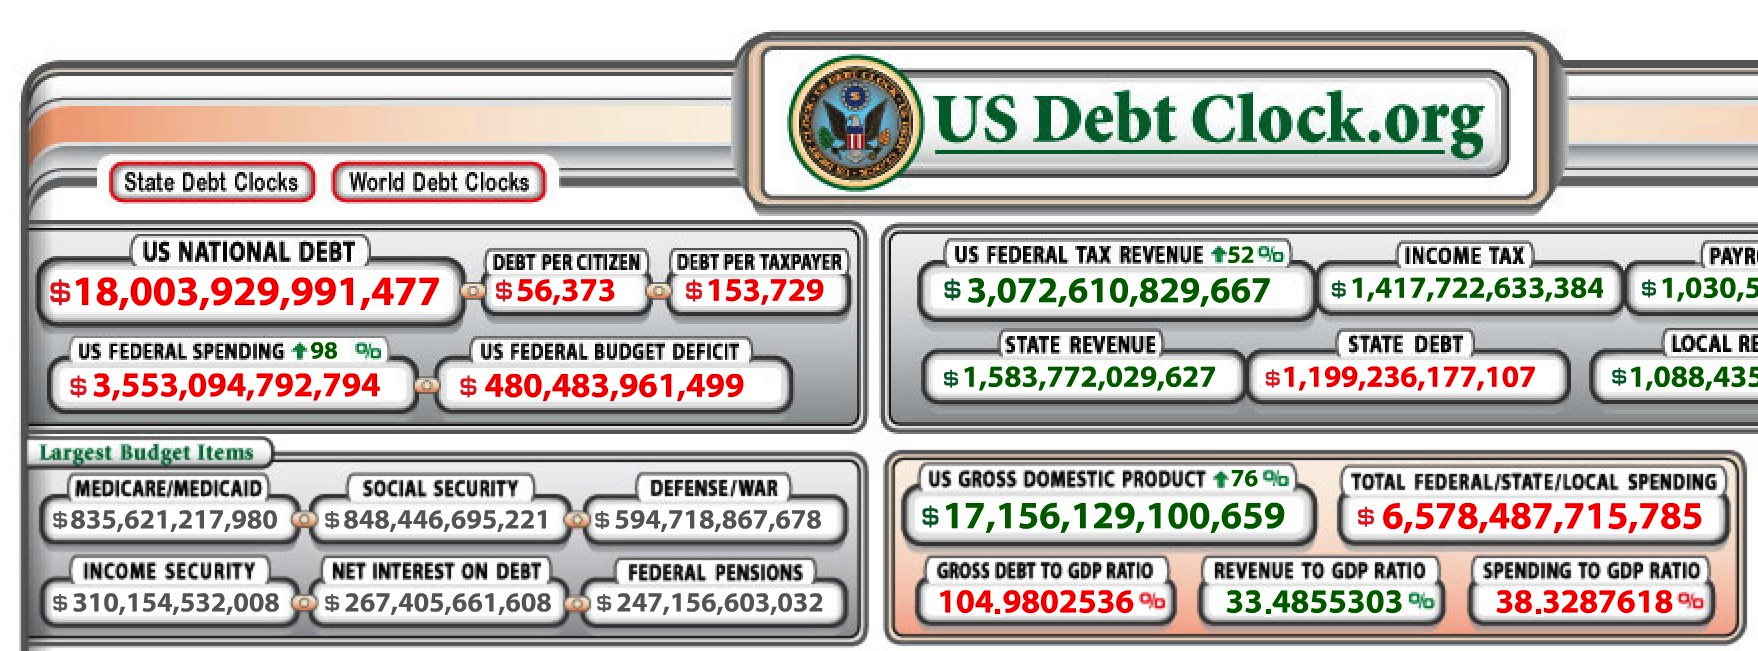 us-schuldenuhr-per-dezember-2014-bei-ueber-18-billionen-dollar-hoechststand-us-debt-clock